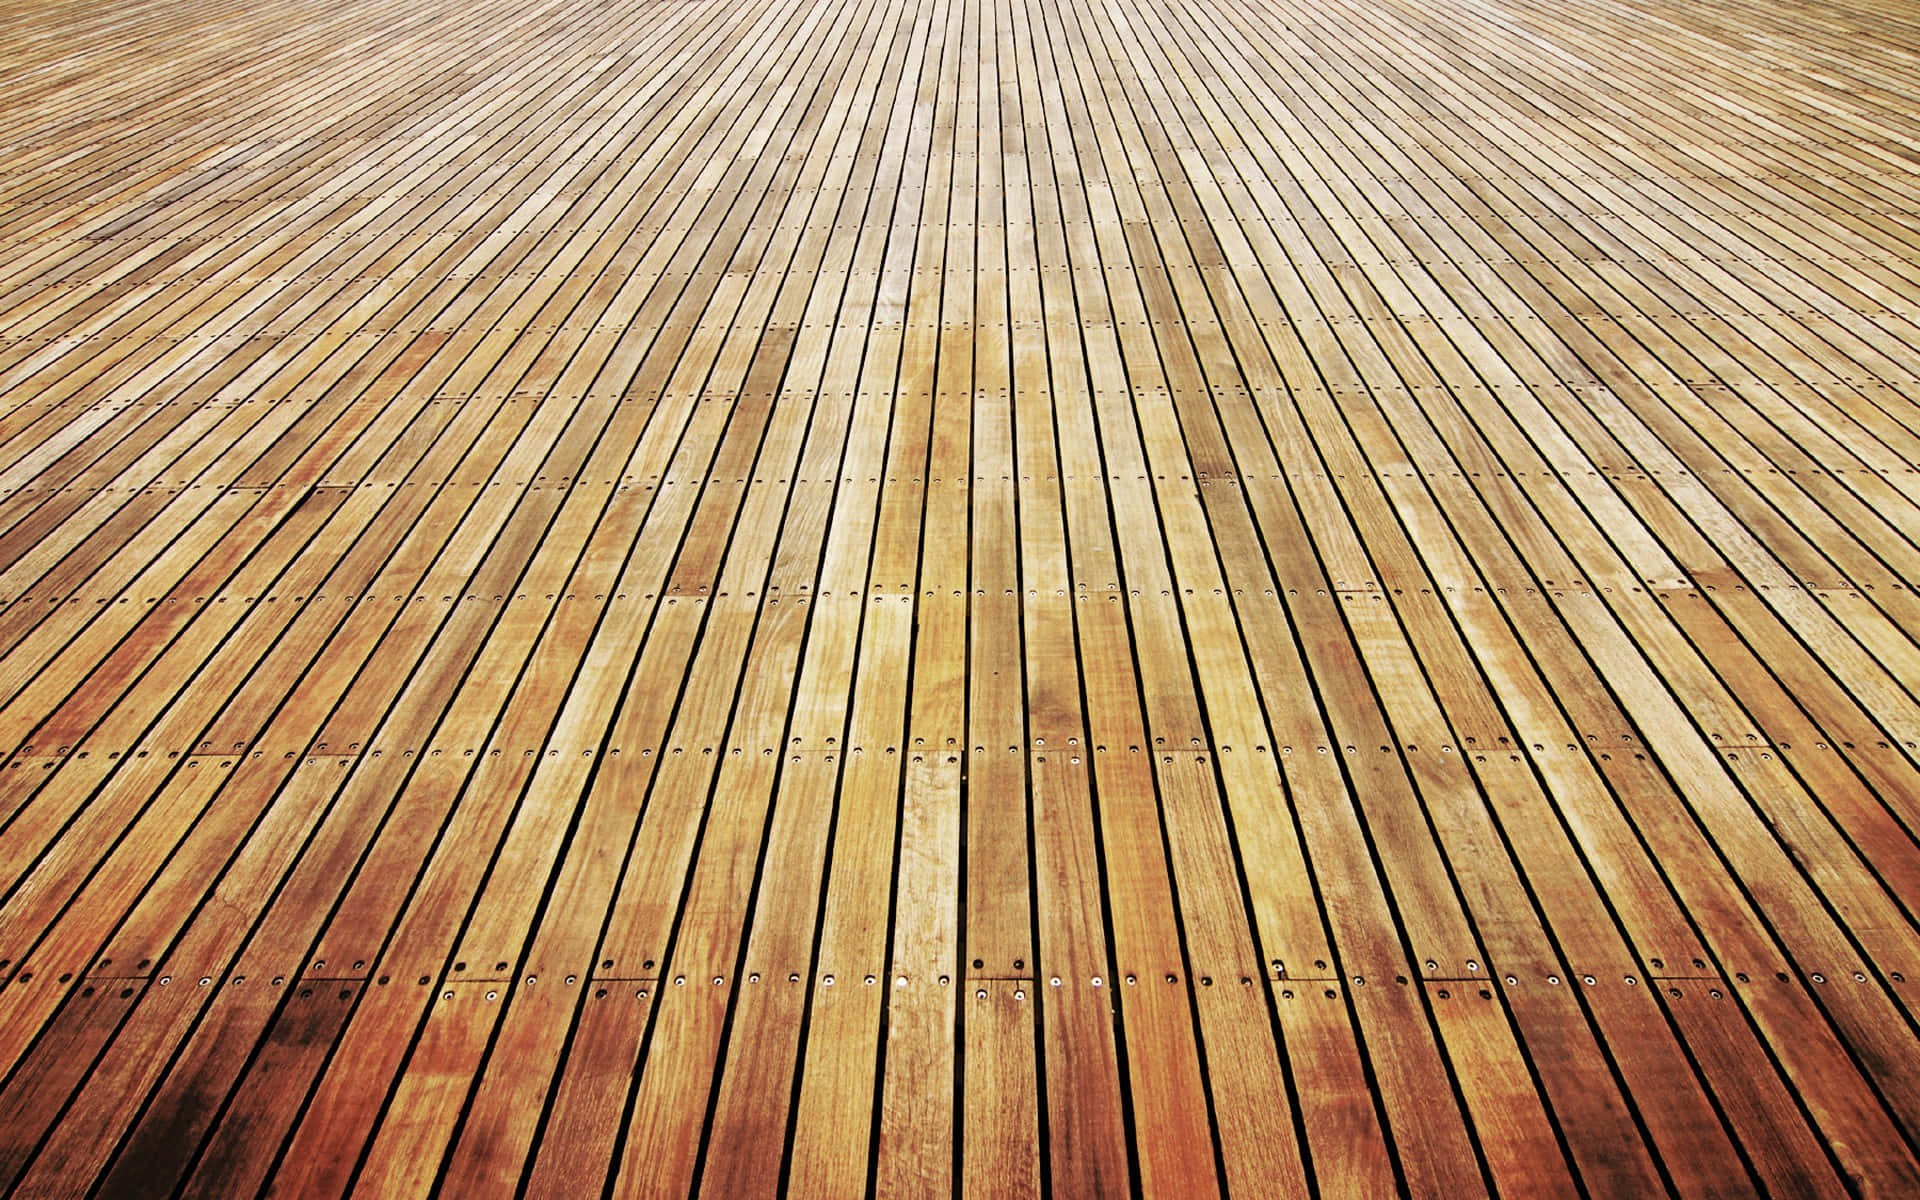 A Wooden Floor With A Wooden Floor